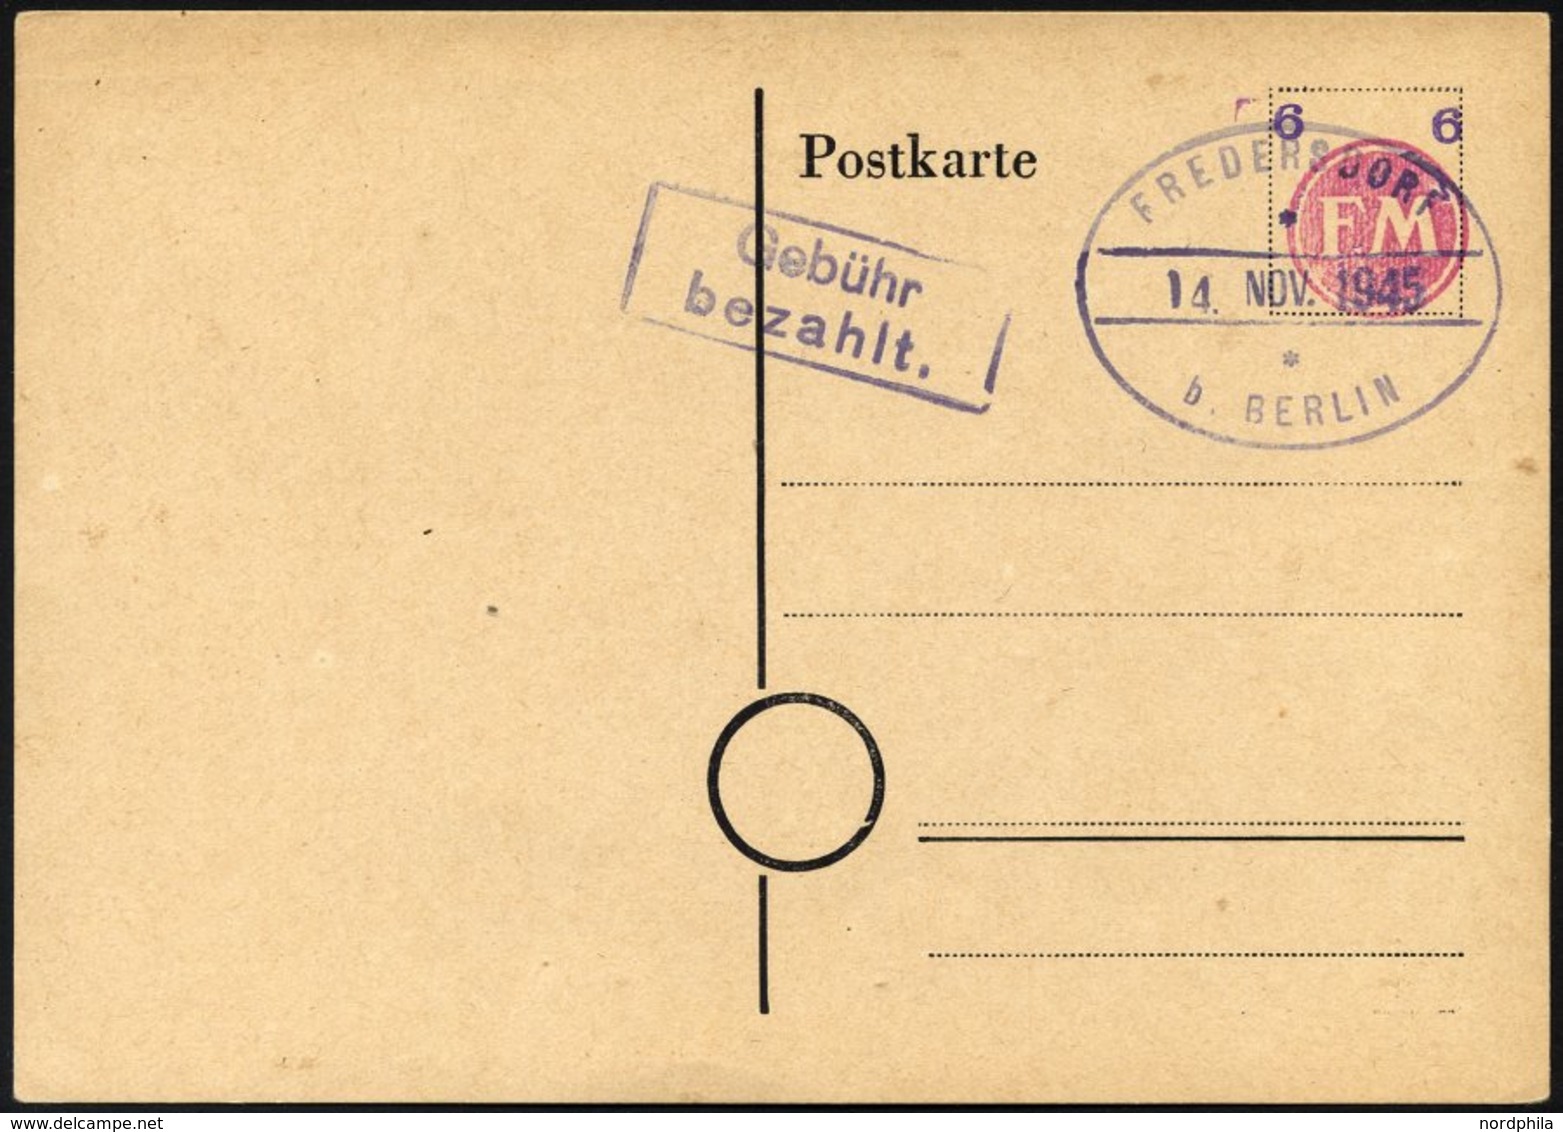 FREDERSDORF PA 02b BRIEF, 1945, Ganzsachenkarte 6 Pf. (FM Rosa Und Wertziffer Violett), Blanko Gestempelt, Pracht, R!, F - Privatpost